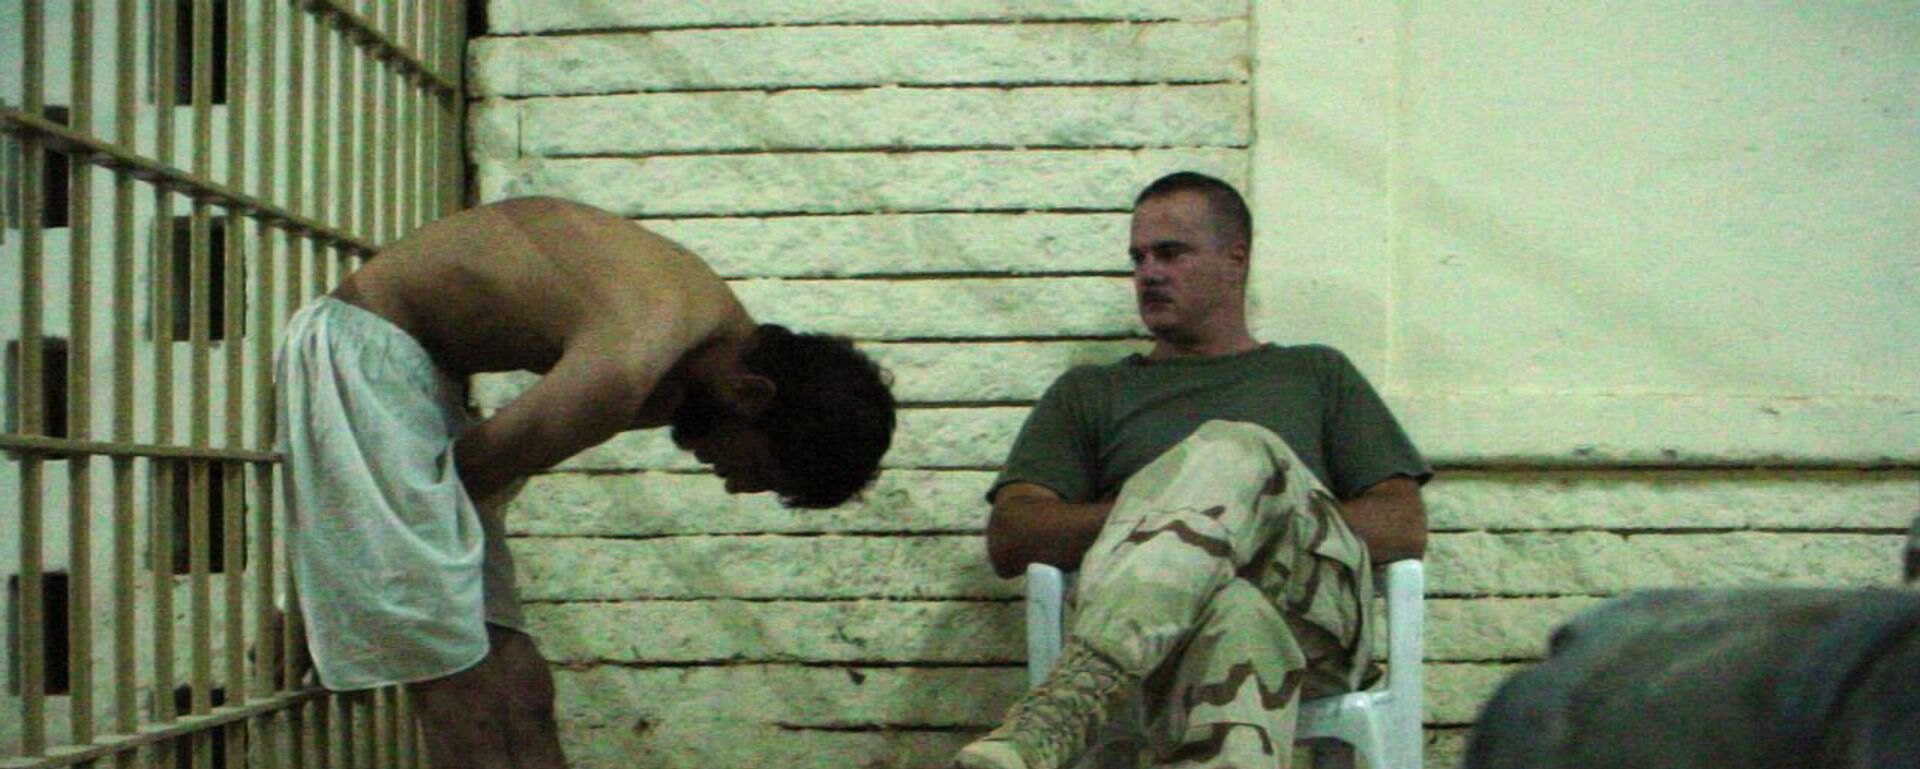 Амерички војник посматра заробљеника у ирачком затвору Абу Грејб - Sputnik Србија, 1920, 20.03.2018